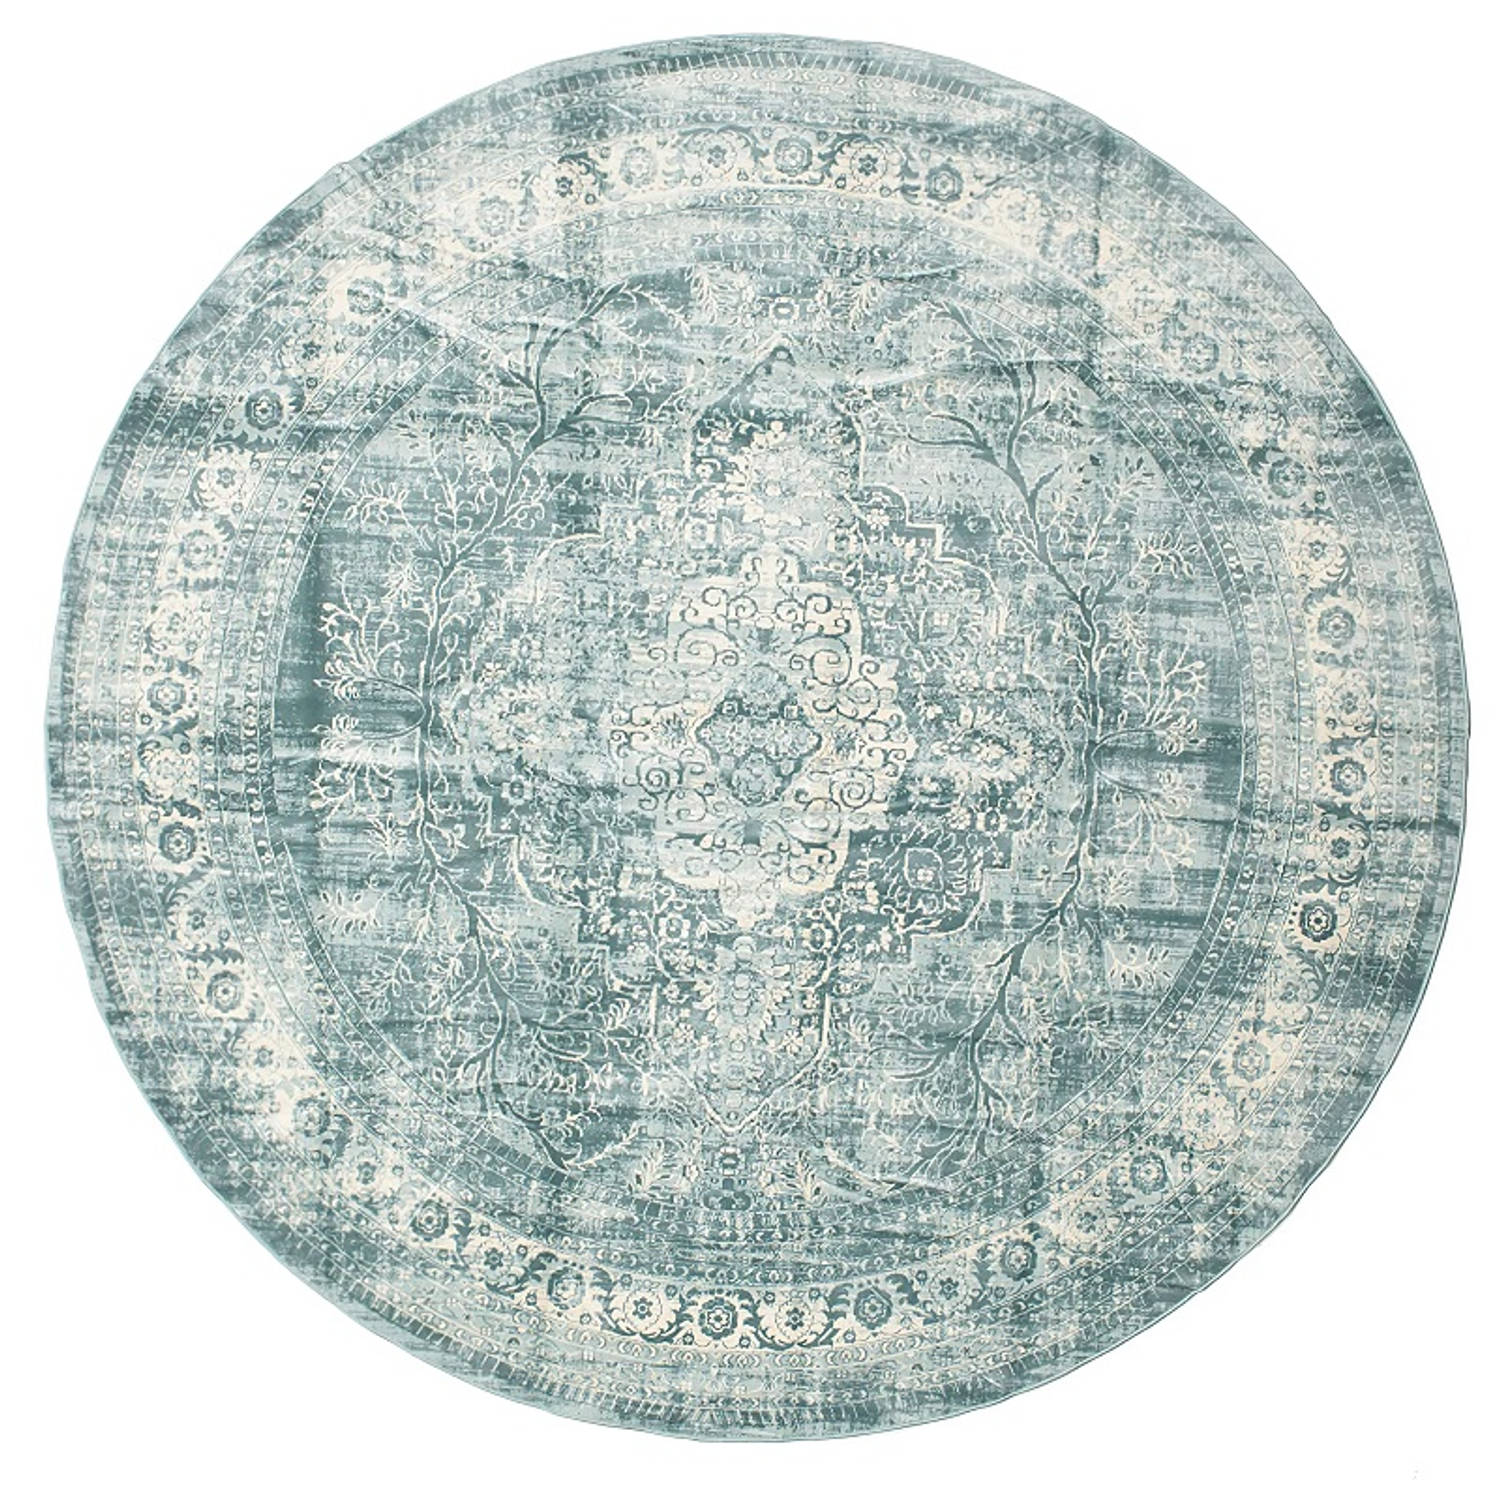 Vloerkleed rond vintage 180cm wit donkerblauw perzisch oosters tapijt